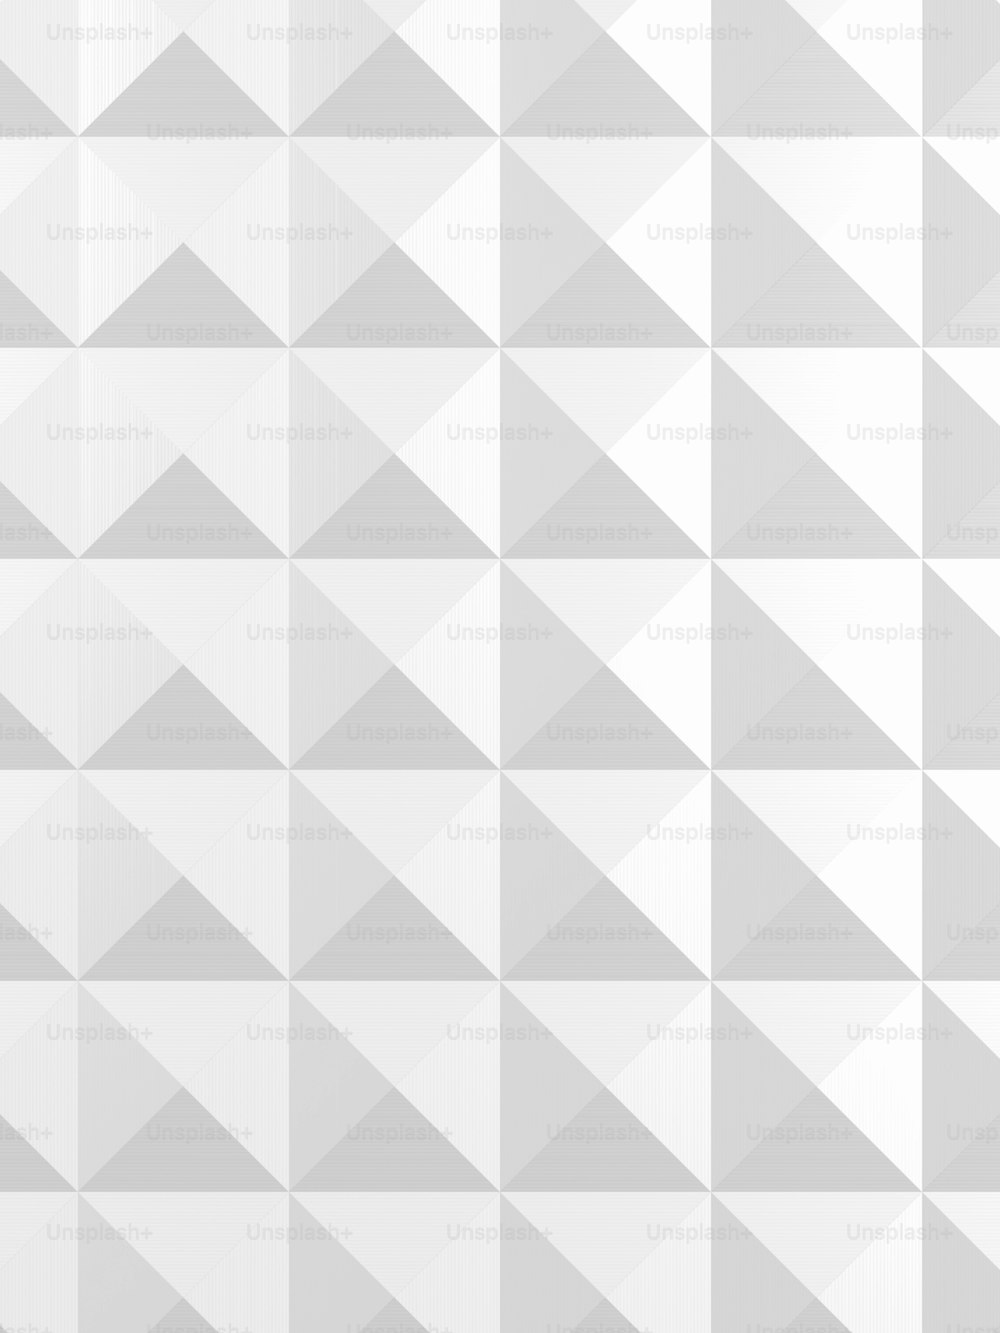 triangular pattern background